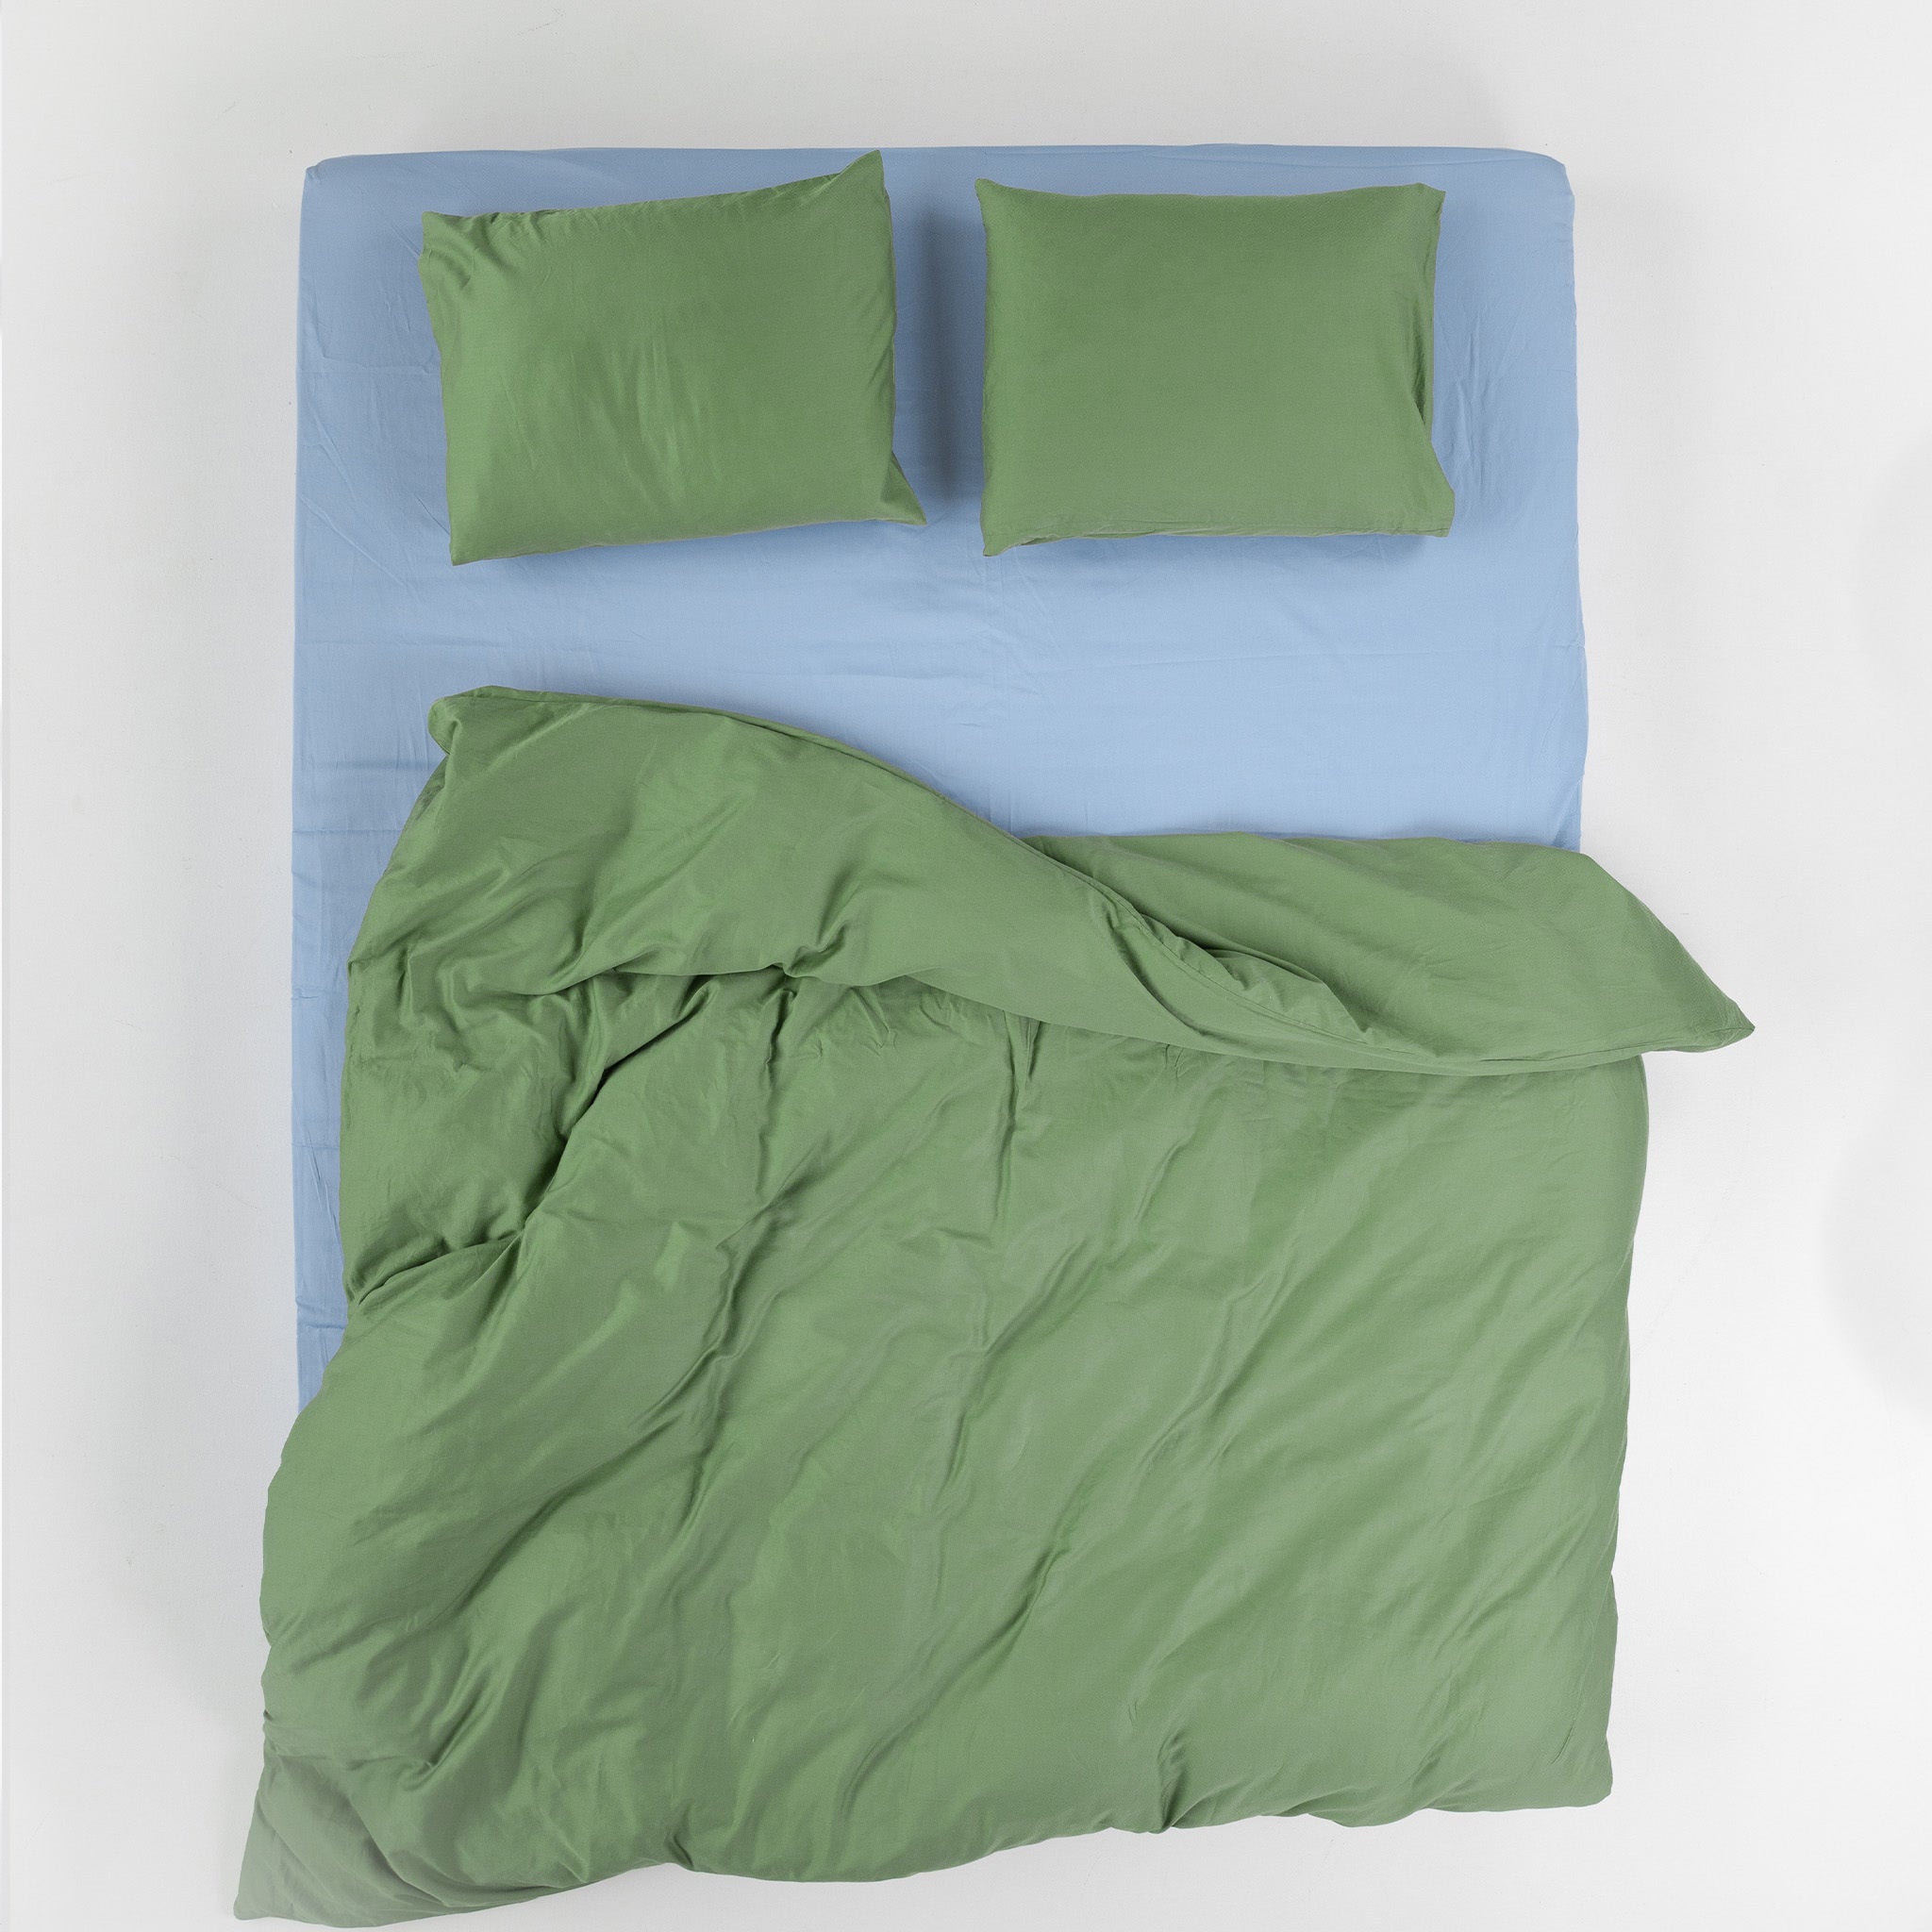 Pillow Cases - Crispy Green